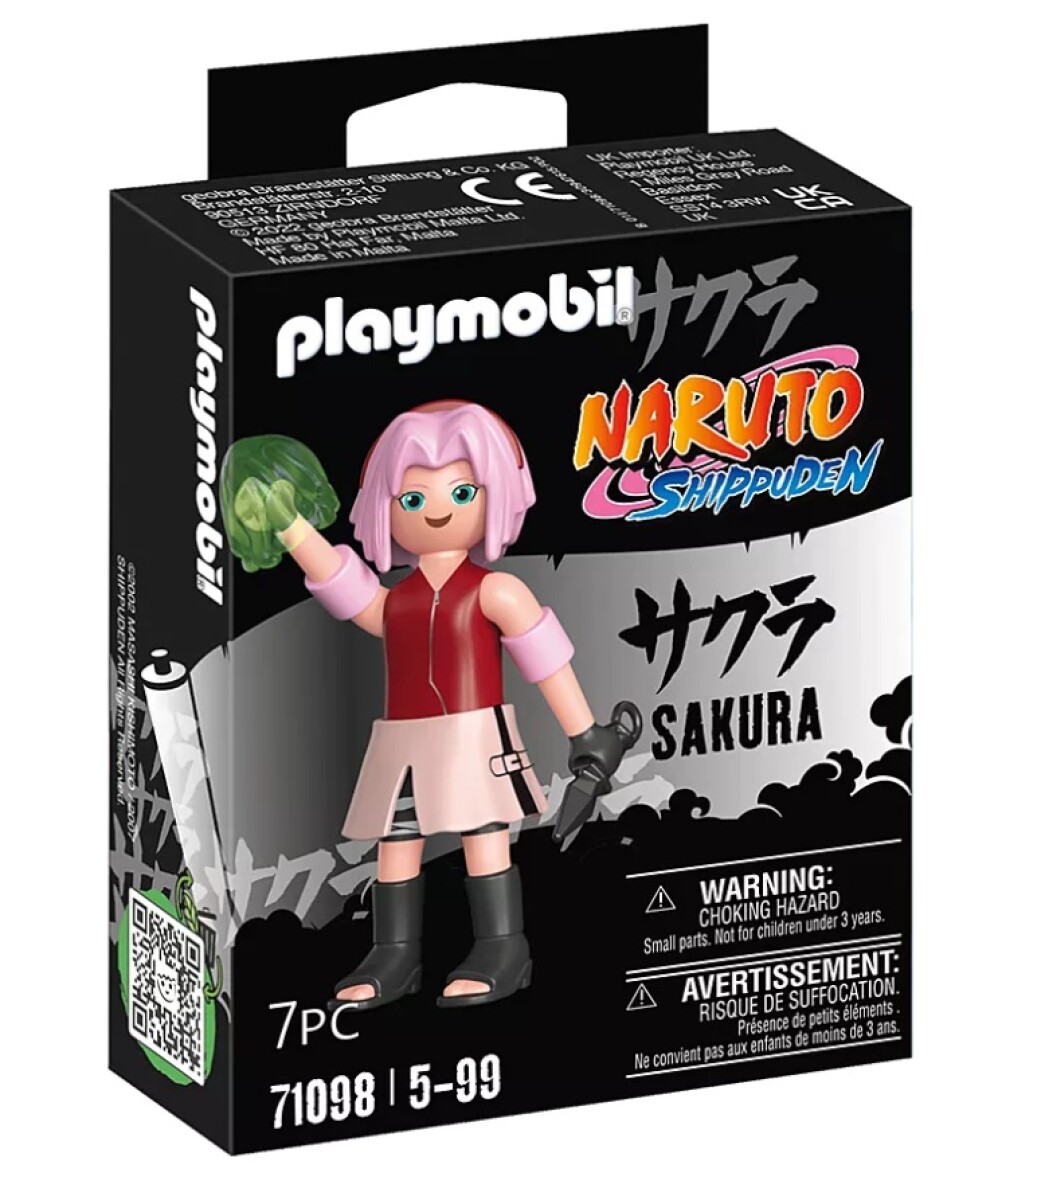 Set Playmobil Naruto Shippuden Sakura - 001 